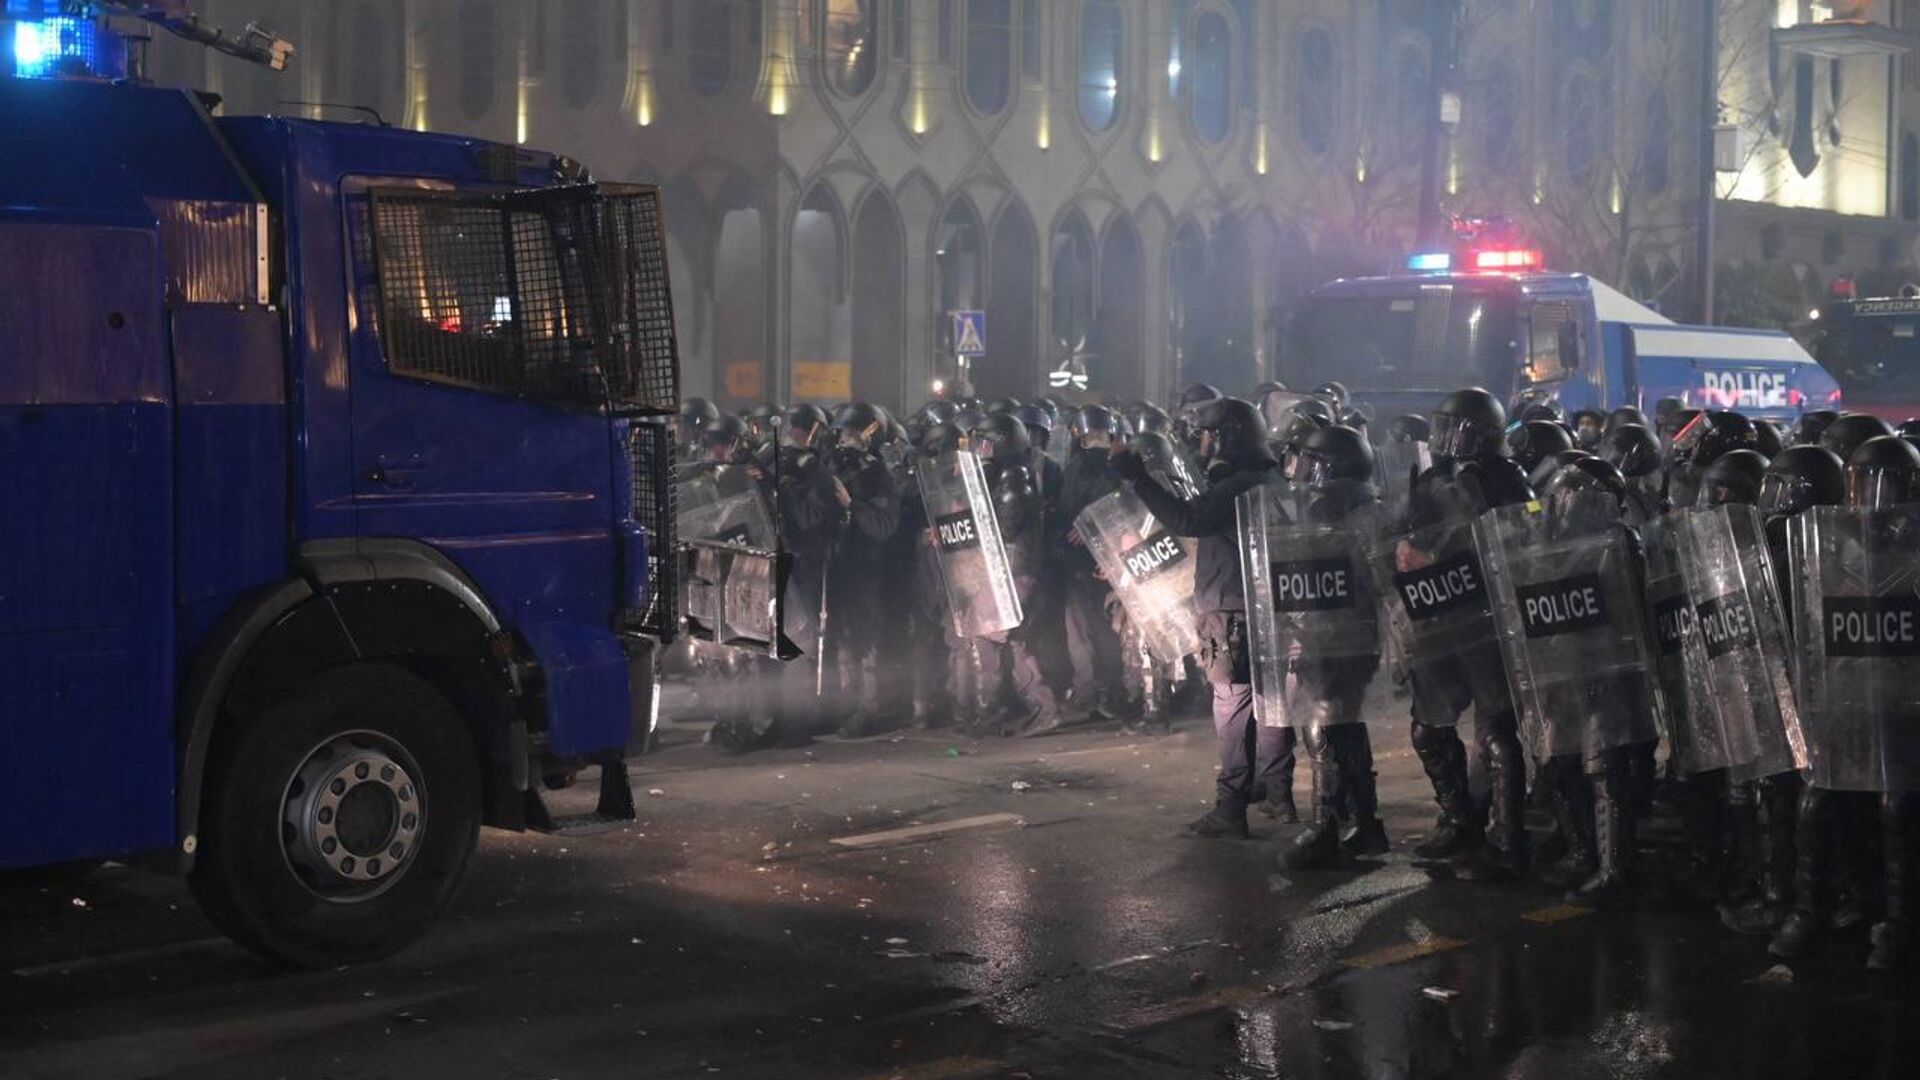 Разгон акции протеста на проспекте Руставели силами полиции в ночь с 8 на 9 марта 2023 - Sputnik Грузия, 1920, 08.03.2023